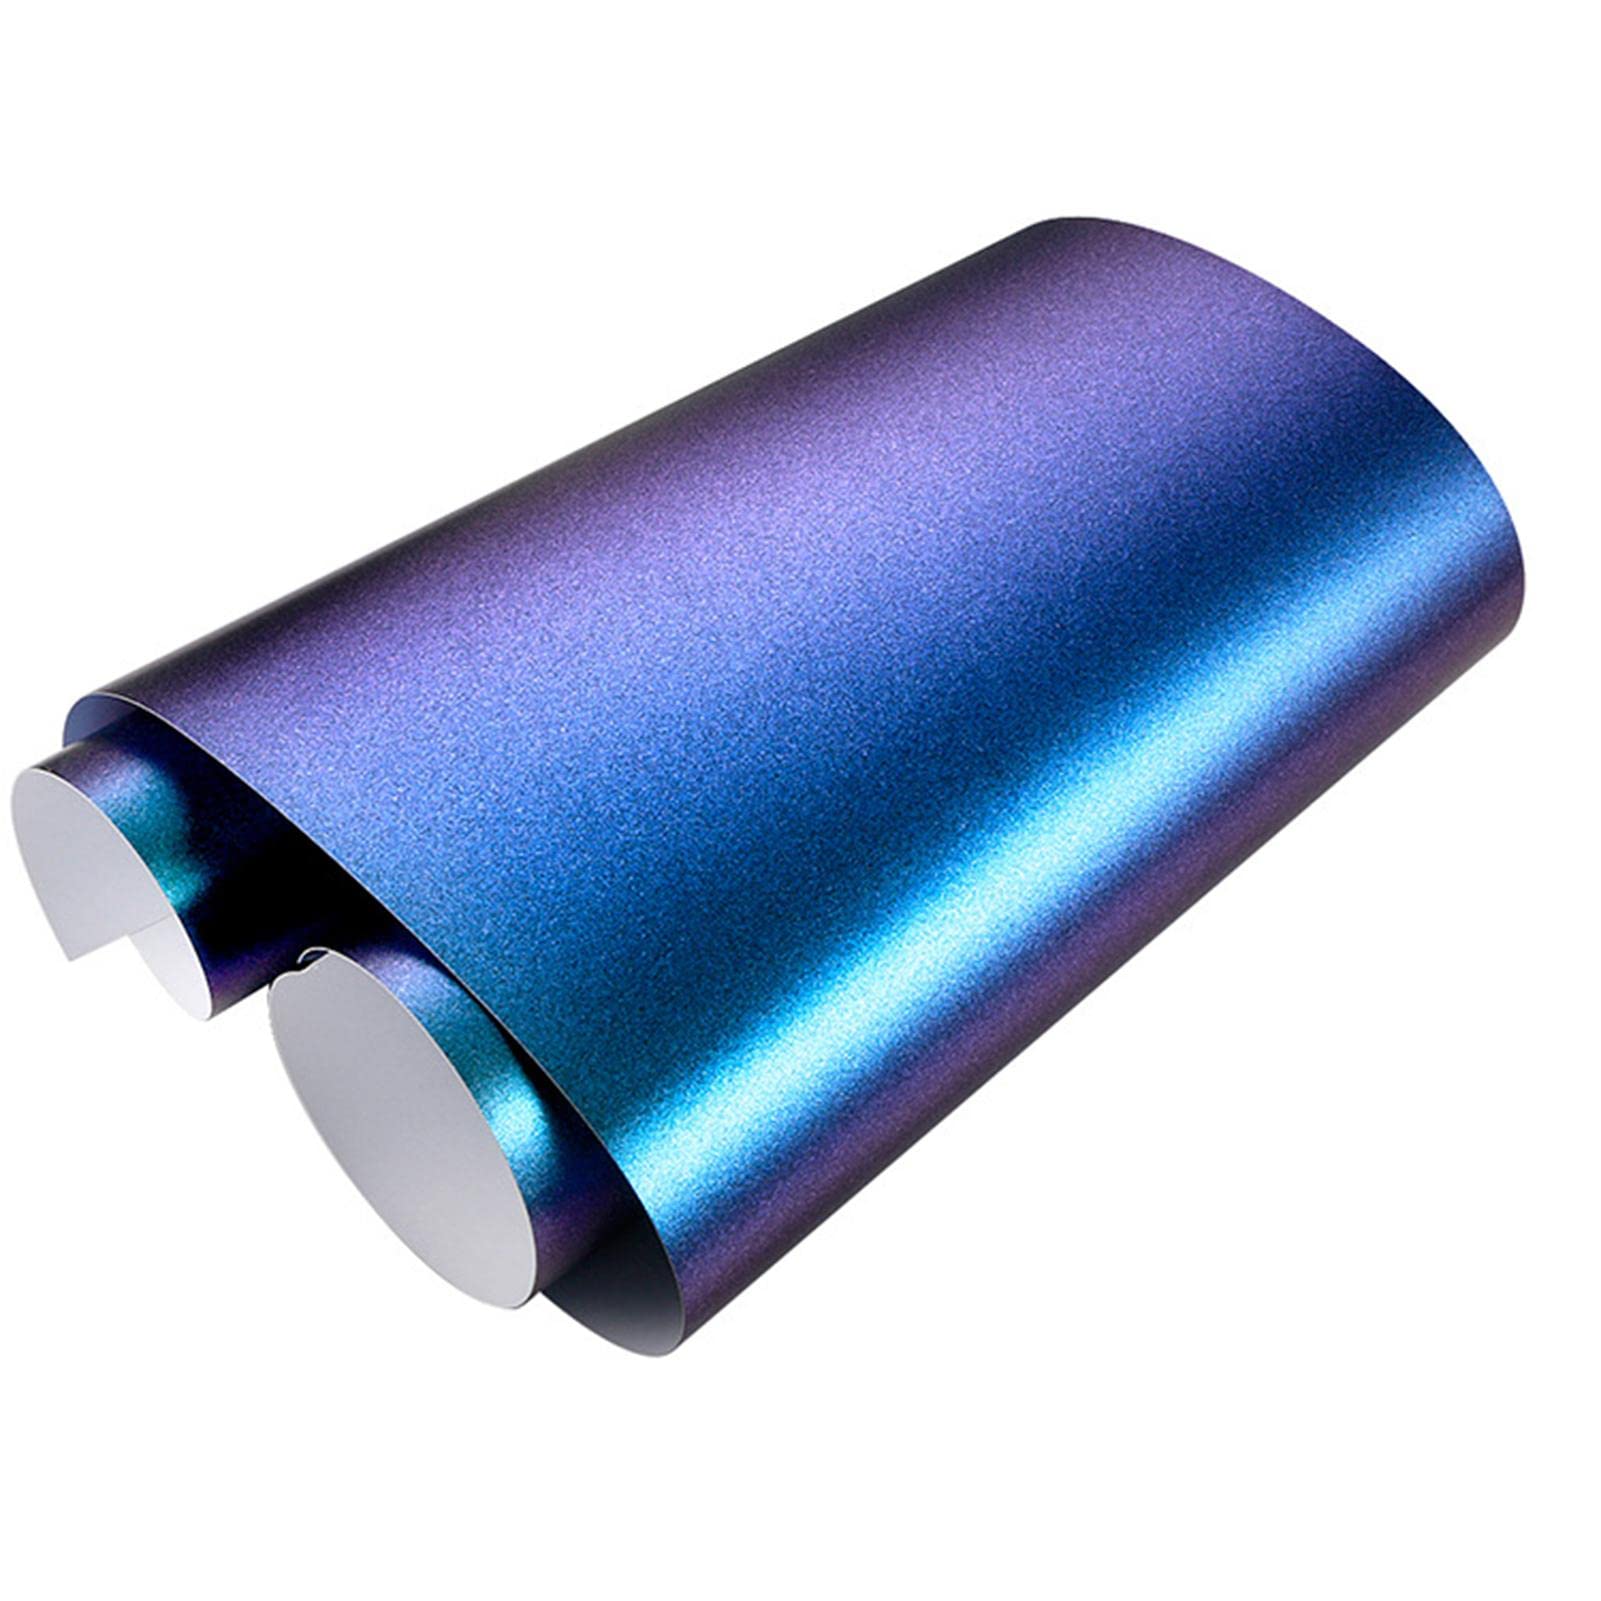 lencyotool Auto-Vinylfolie glänzend lila,Glänzende lila Dekorfolie für Auto | Dehnbarer Schutzkappen-Liner, Selbstklebende Lackschutz-Vinylfolie mit Air-Release-Technologie von lencyotool